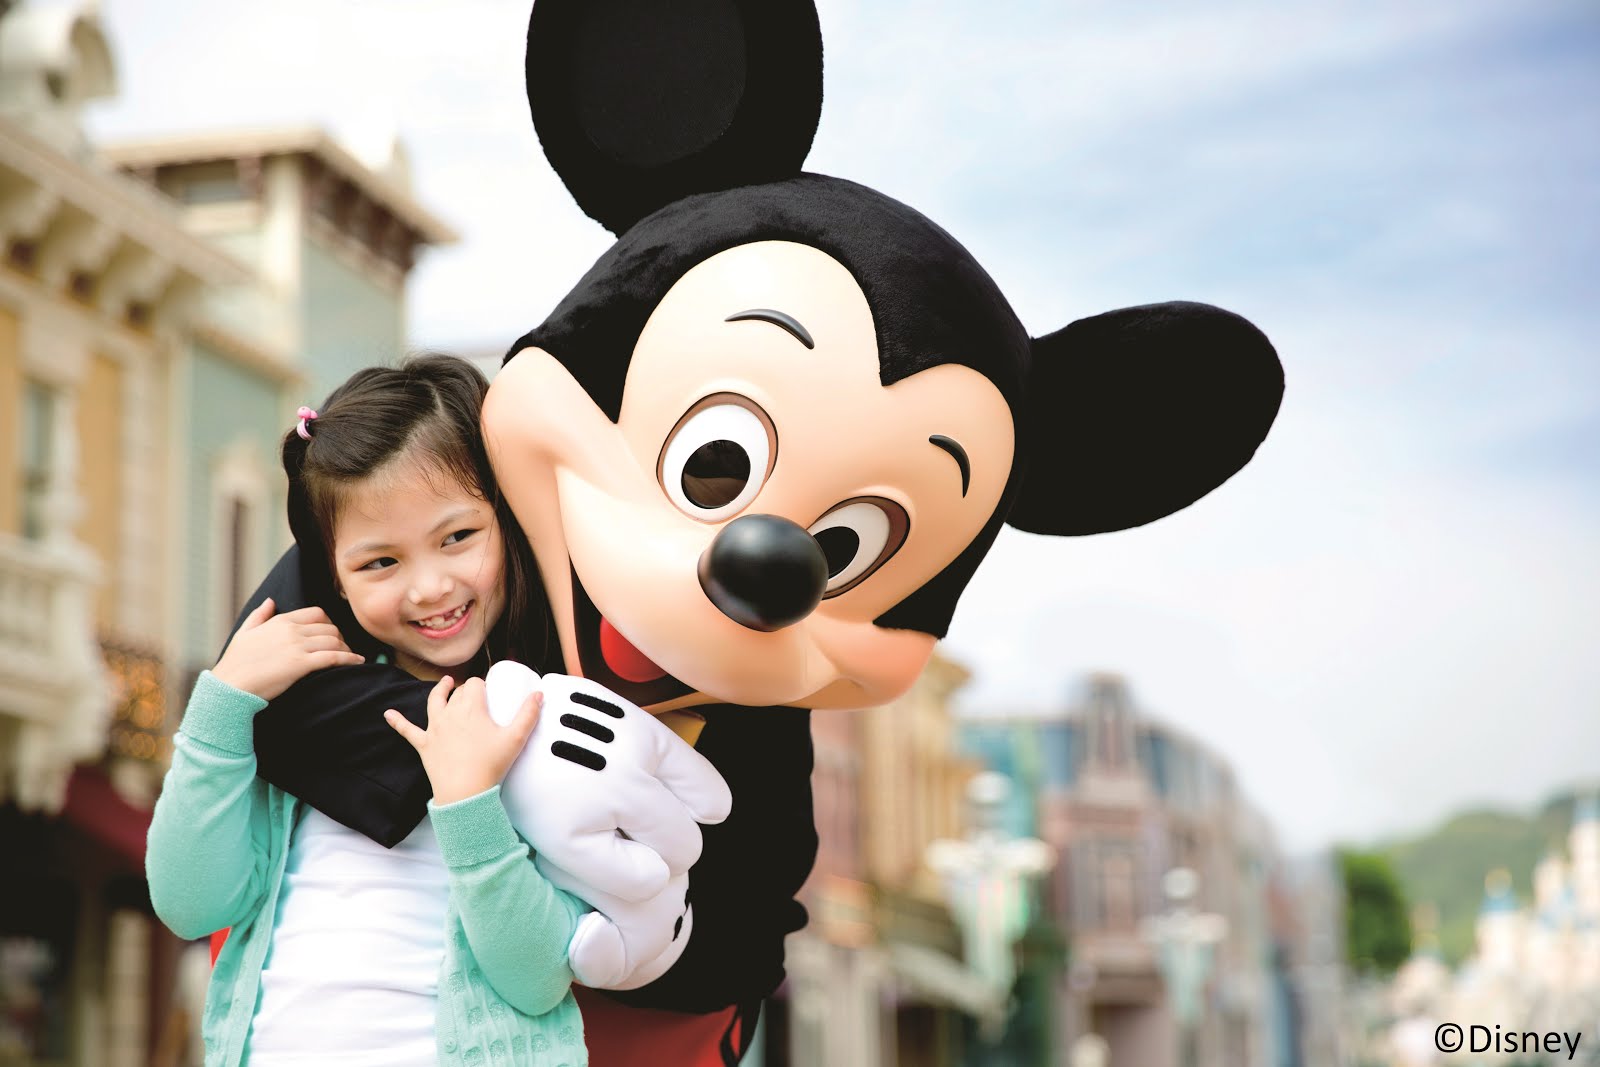 Mickey Mouse Experience at Disneyland, Hong Kong